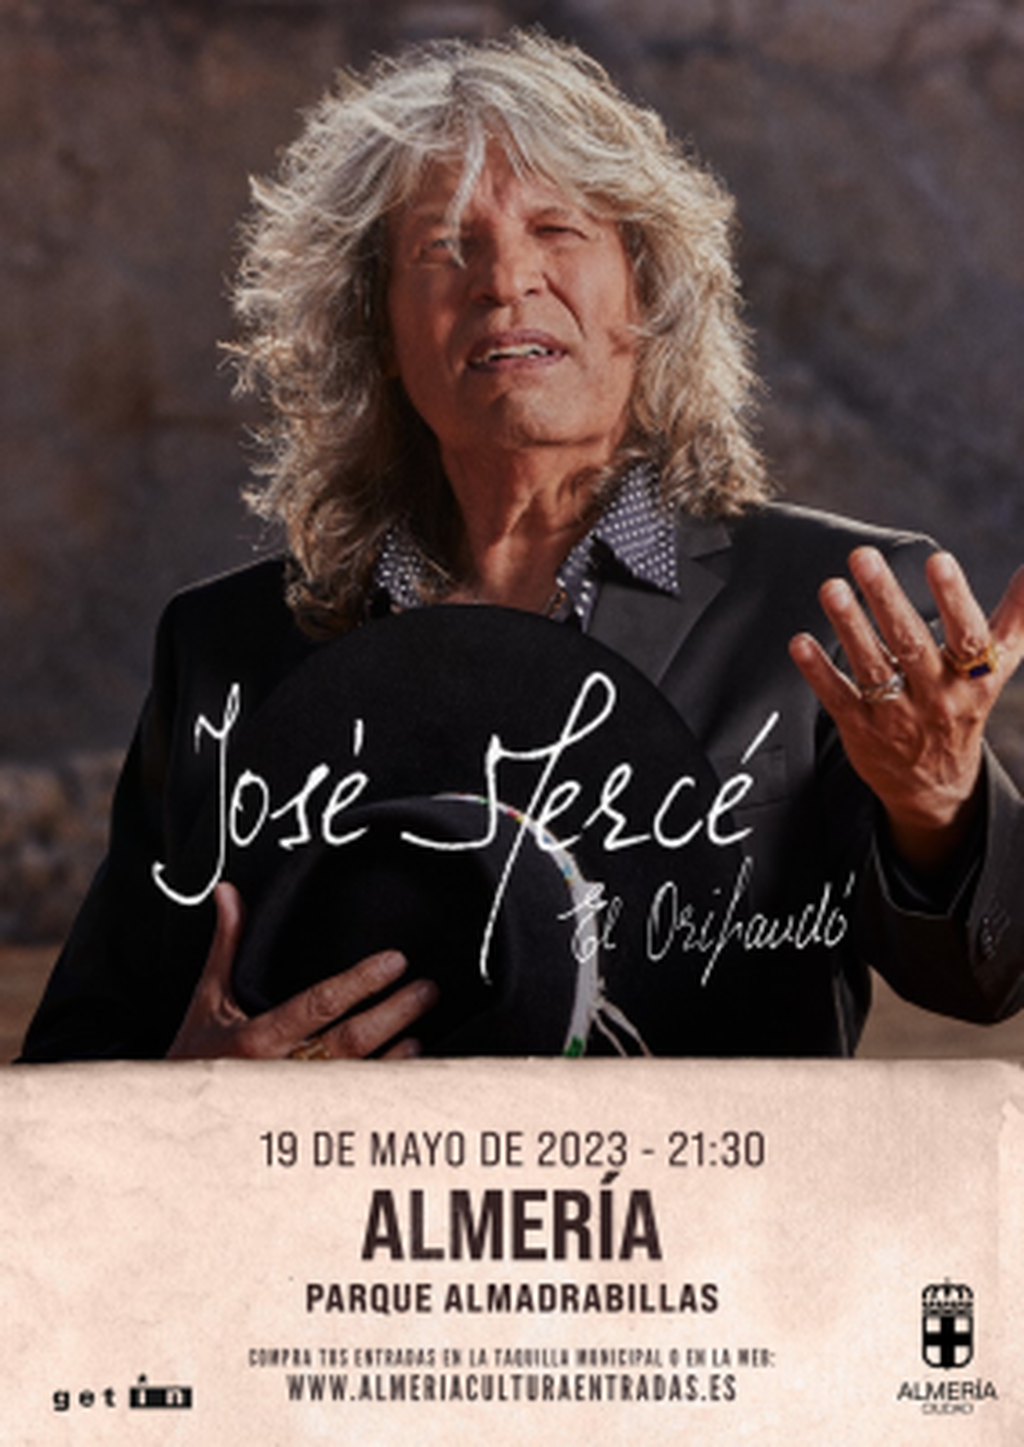 José Mercé en concierto - 19 de mayo de 2023 - Parque de las Almadrabillas